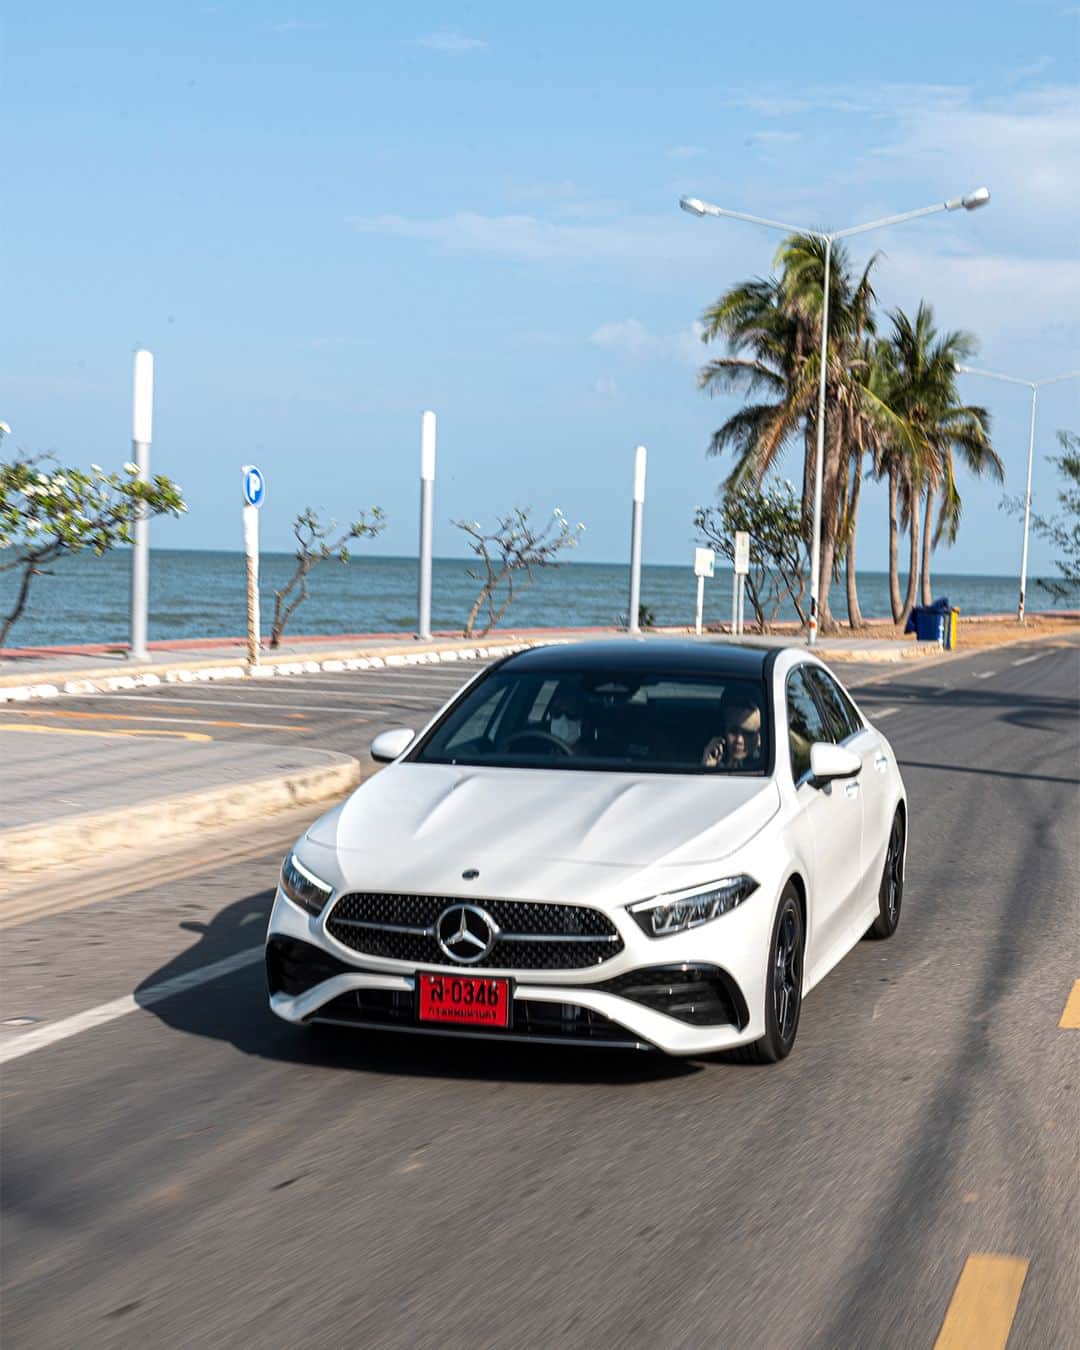 Mercedes-Benz Thailandのインスタグラム：「🍃🏞️ Weekend นี้ได้เวลาออกไปเติมพลังใจและสนุกอย่างเต็มที่กับ Mercedes-Benz A 200 AMG Dynamic ด้วยดีไซน์ที่ปราดเปรียว คล่องตัว ทำให้เดินทางได้อย่างสะดวกสบาย มาพร้อมกับดีไซน์ภายนอกที่ชวนหลงใหลตั้งแต่แรกเห็นกับกระจังหน้าใหม่ล่าสุด Star pattern radiator grille และ LED High Performance ไฟหน้าอัจฉริยะที่ทำให้ทุกการเดินทางเป็นเรื่องสบายๆ มาพร้อมกับภายในที่กว้างขวางและเทคโนโลยีอัจฉริยะ MBUX7 รุ่นใหม่ล่าสุดให้คุณเพลิดเพลินได้ทุกการเดินทาง  *อุปกรณ์บางส่วนในภาพอาจแตกต่างจากที่จำหน่ายจริง โปรดตรวจสอบรายการอุปกรณ์ของรถยนต์แต่ละรุ่นที่ผู้จำหน่ายฯ อย่างเป็นทางการทั่วประเทศ​​  #AClass #MercedesBenz #MercedesBenzThailand」